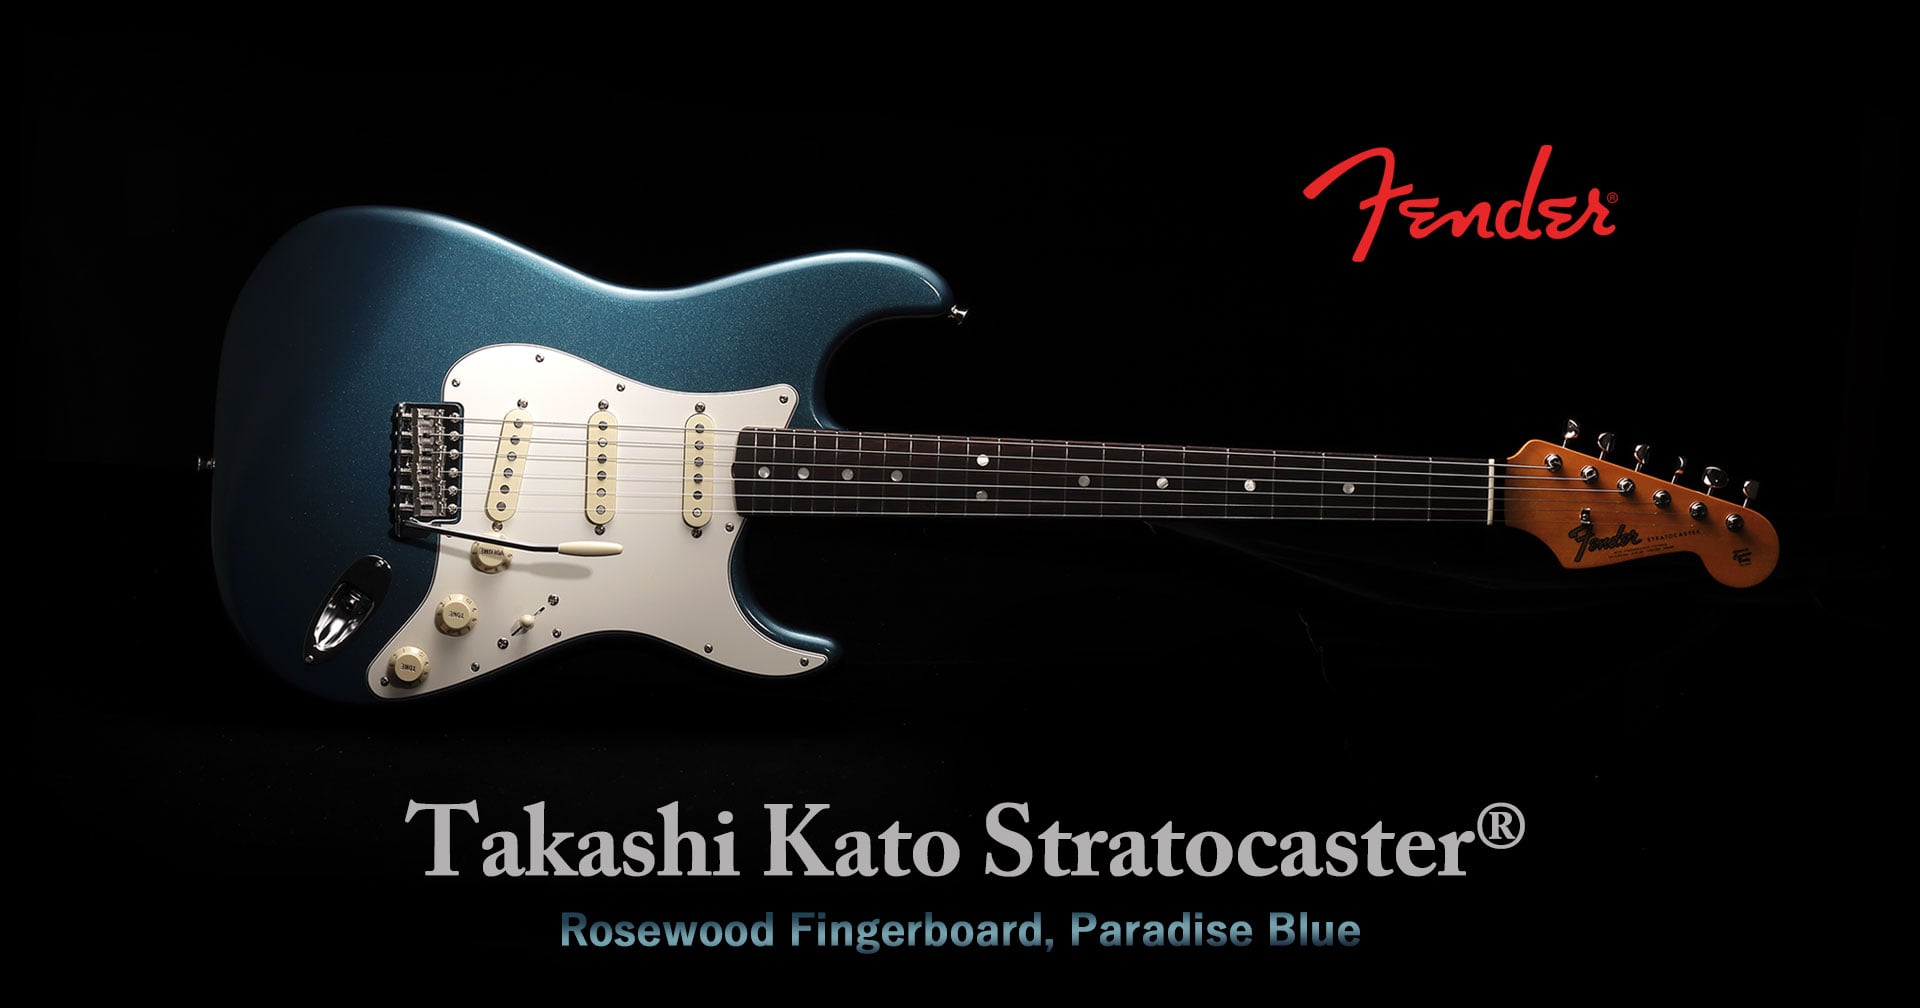 58806円 直販在庫 Fender Takashi Kato Stratocaster Rosewood Fingerboard  Paradise Blue 加藤隆志モデル 【S/N:JD22032166】【店頭未展示品】【横浜店】【YRK】 楽器 2KSHIRTSNG